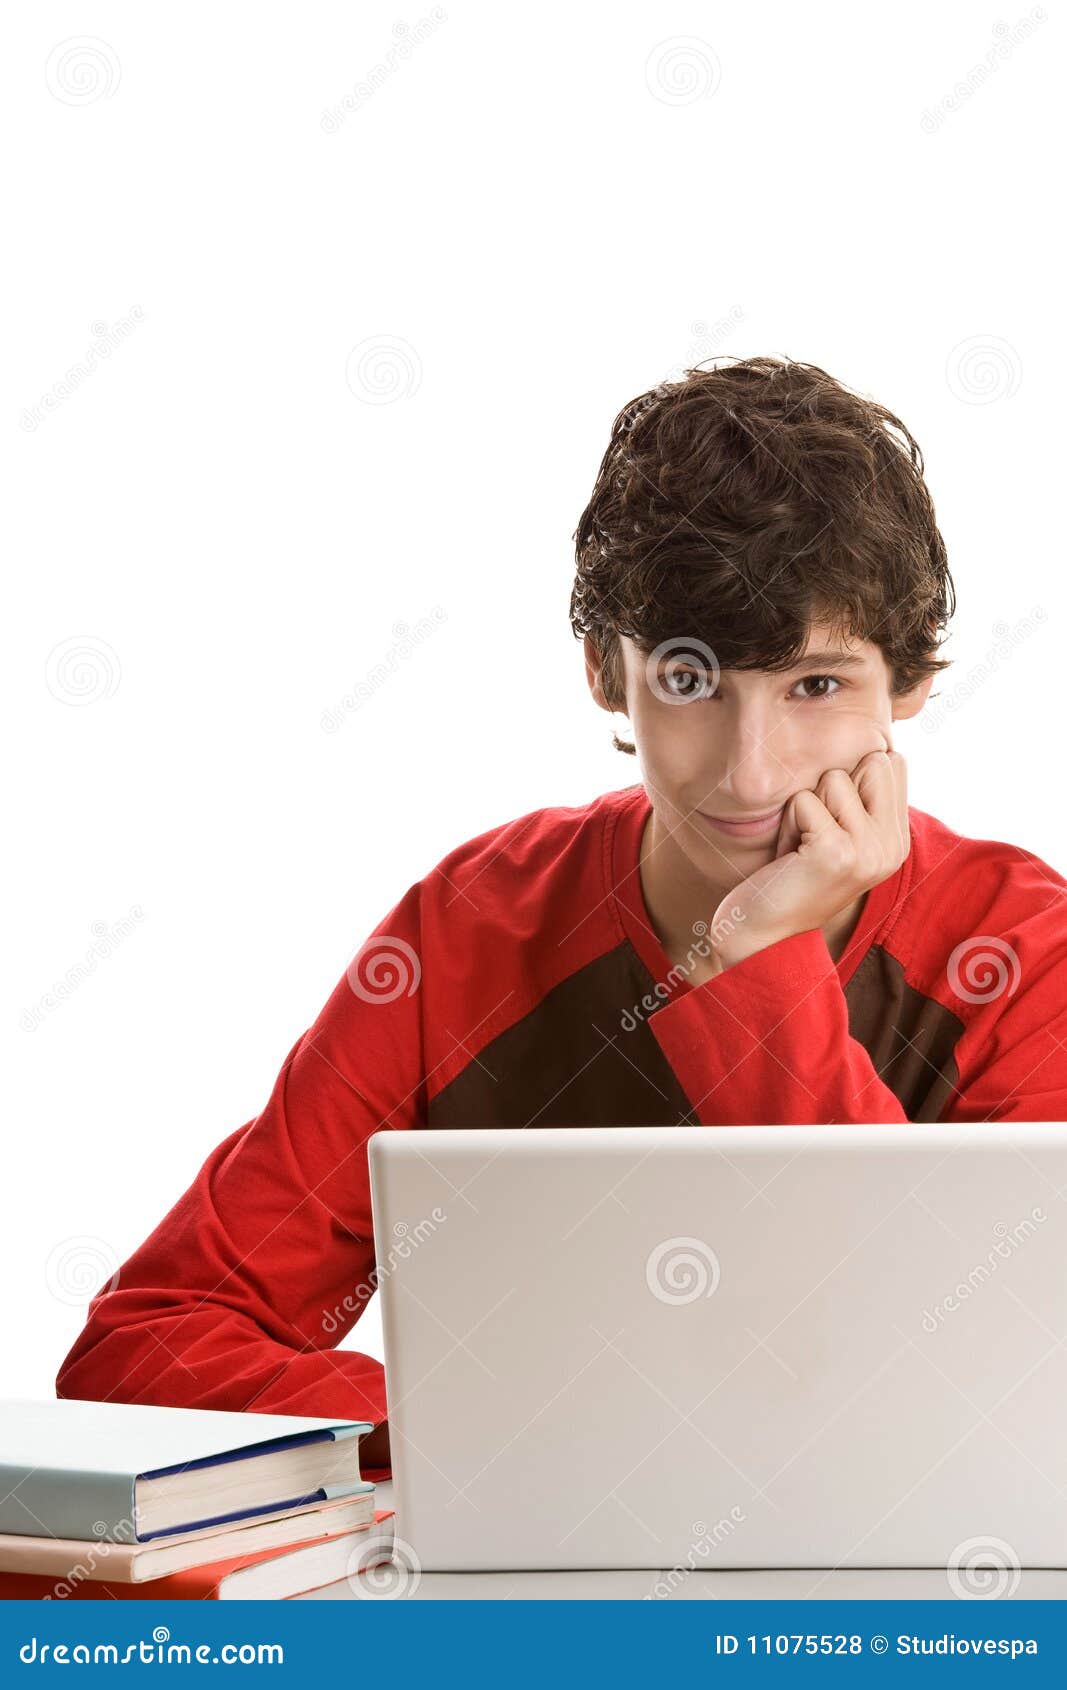 Adolescente dietro lo scrittorio con il computer portatile. Adolescente che si siede dietro lo scrittorio con il computer portatile isolato sulla priorità bassa bianca